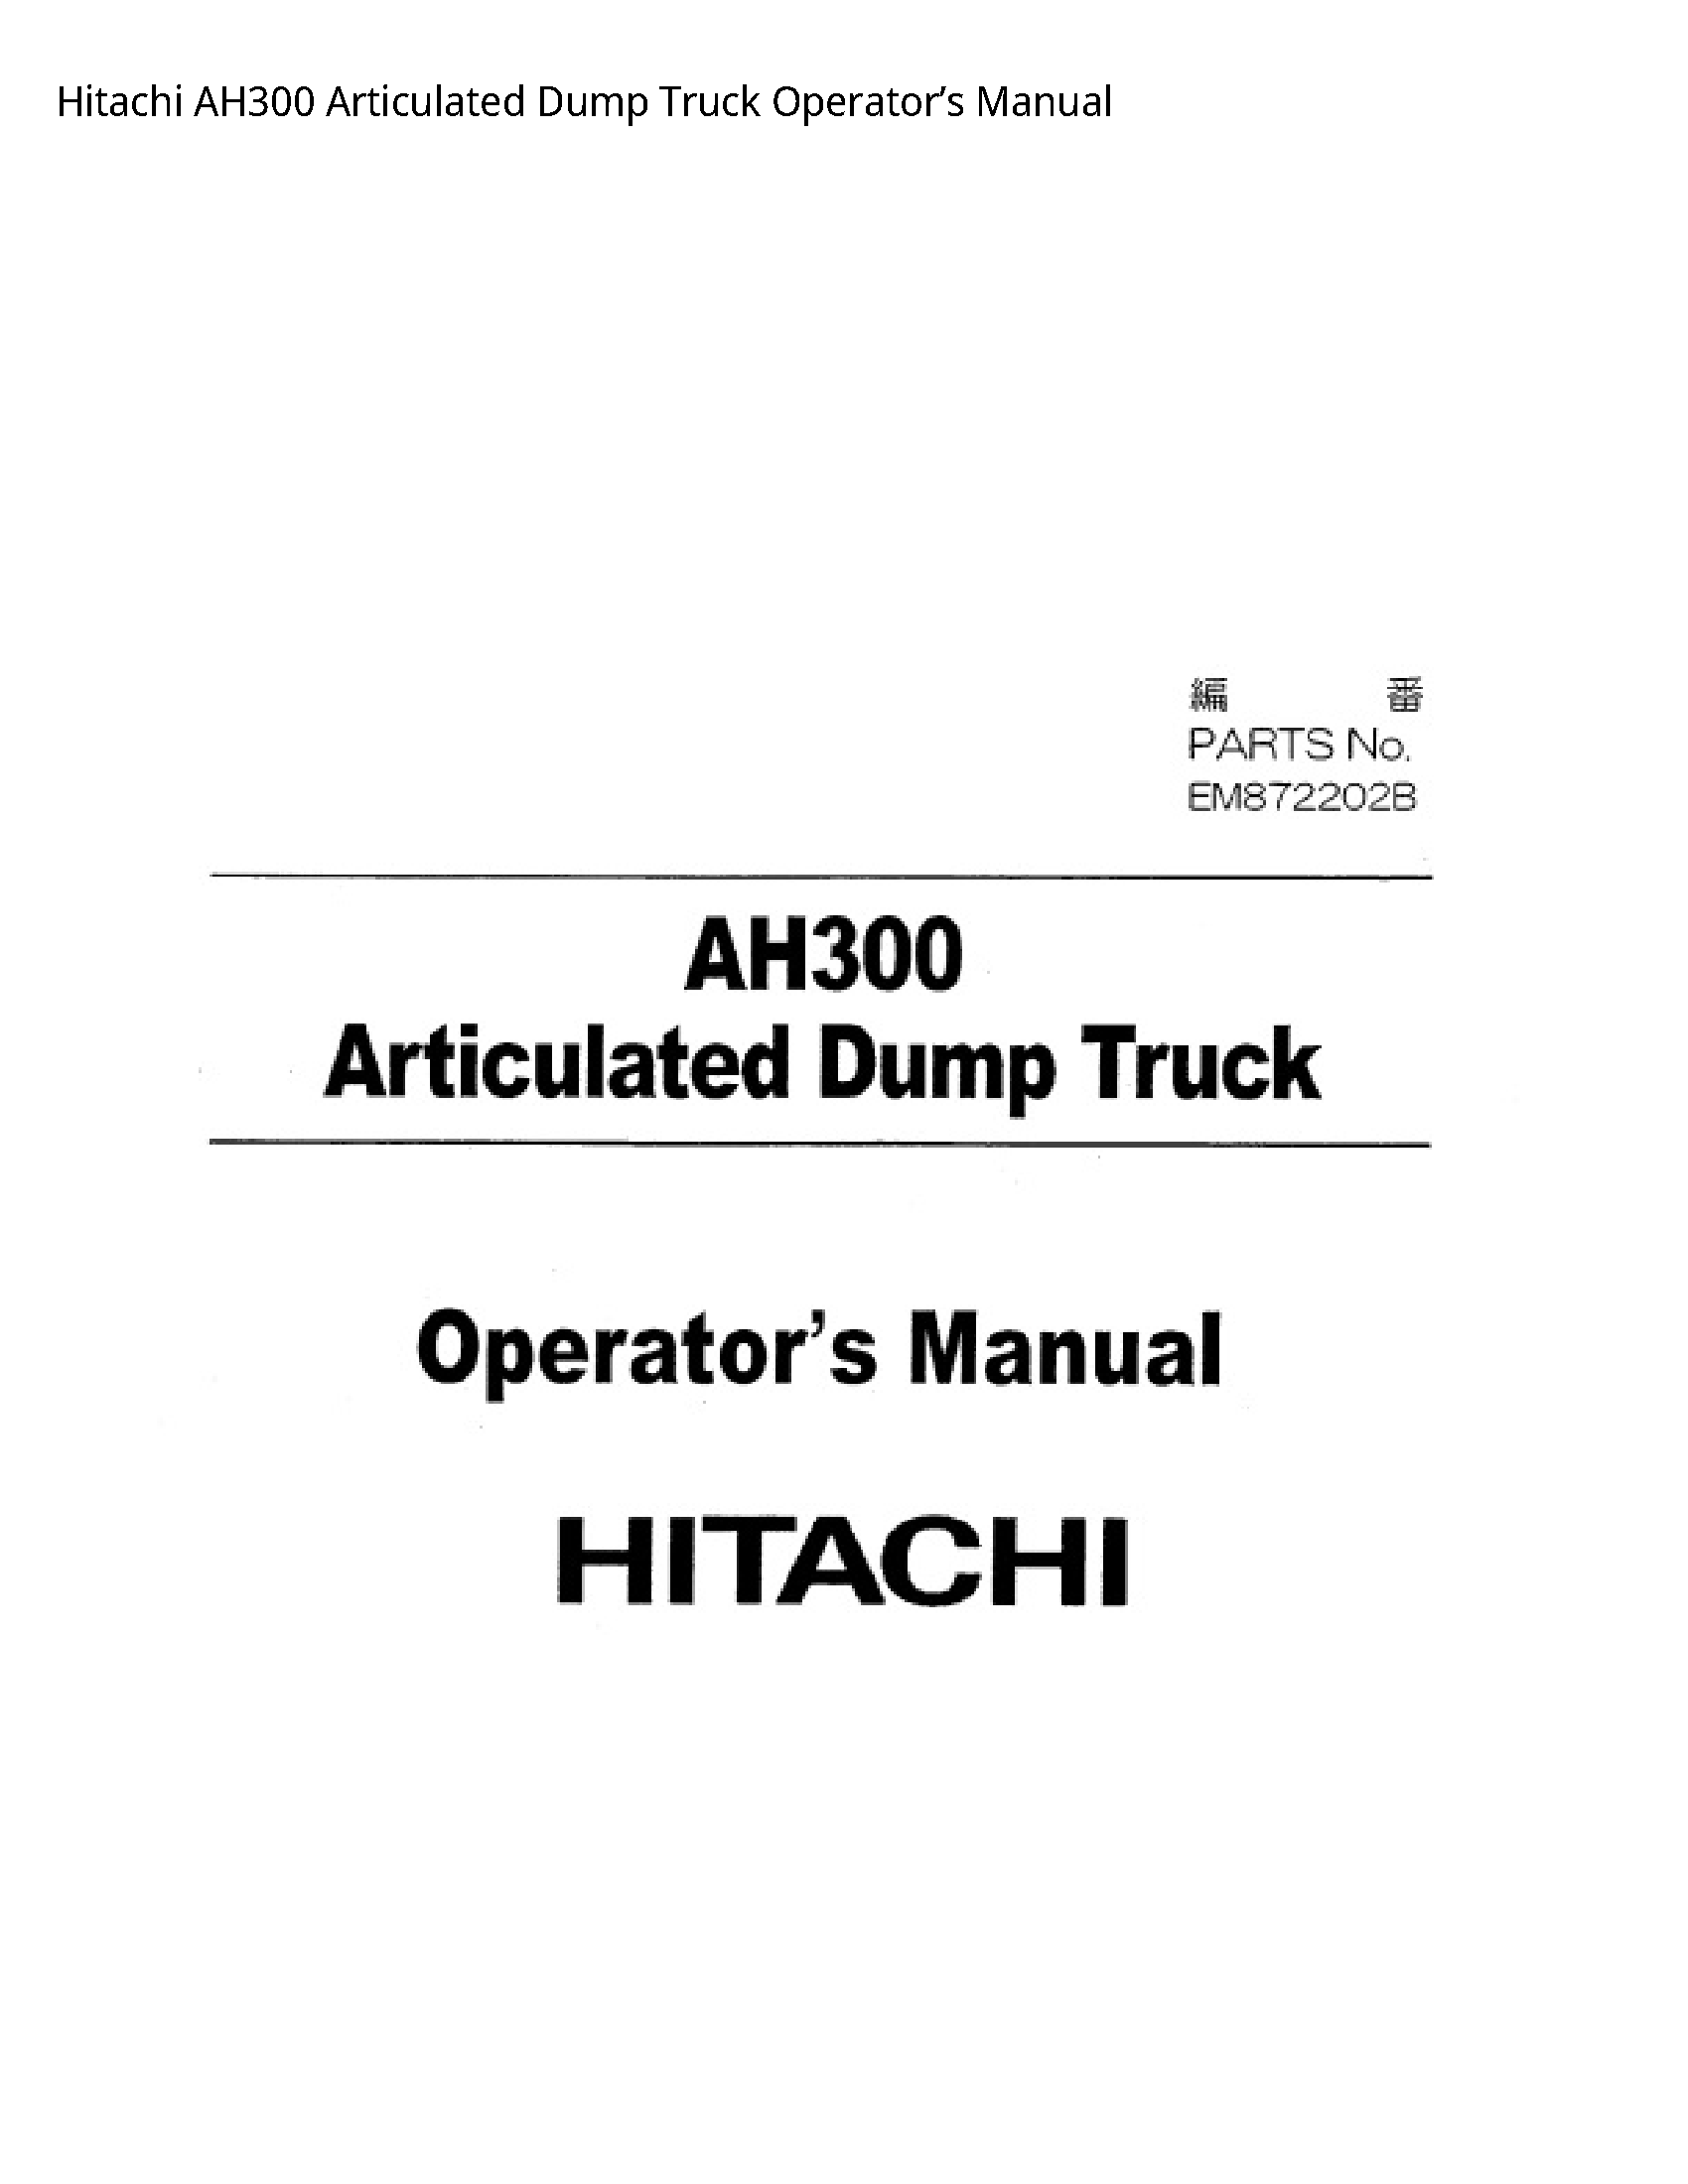 Hitachi AH300 Articulated Dump Truck Operator’s manual